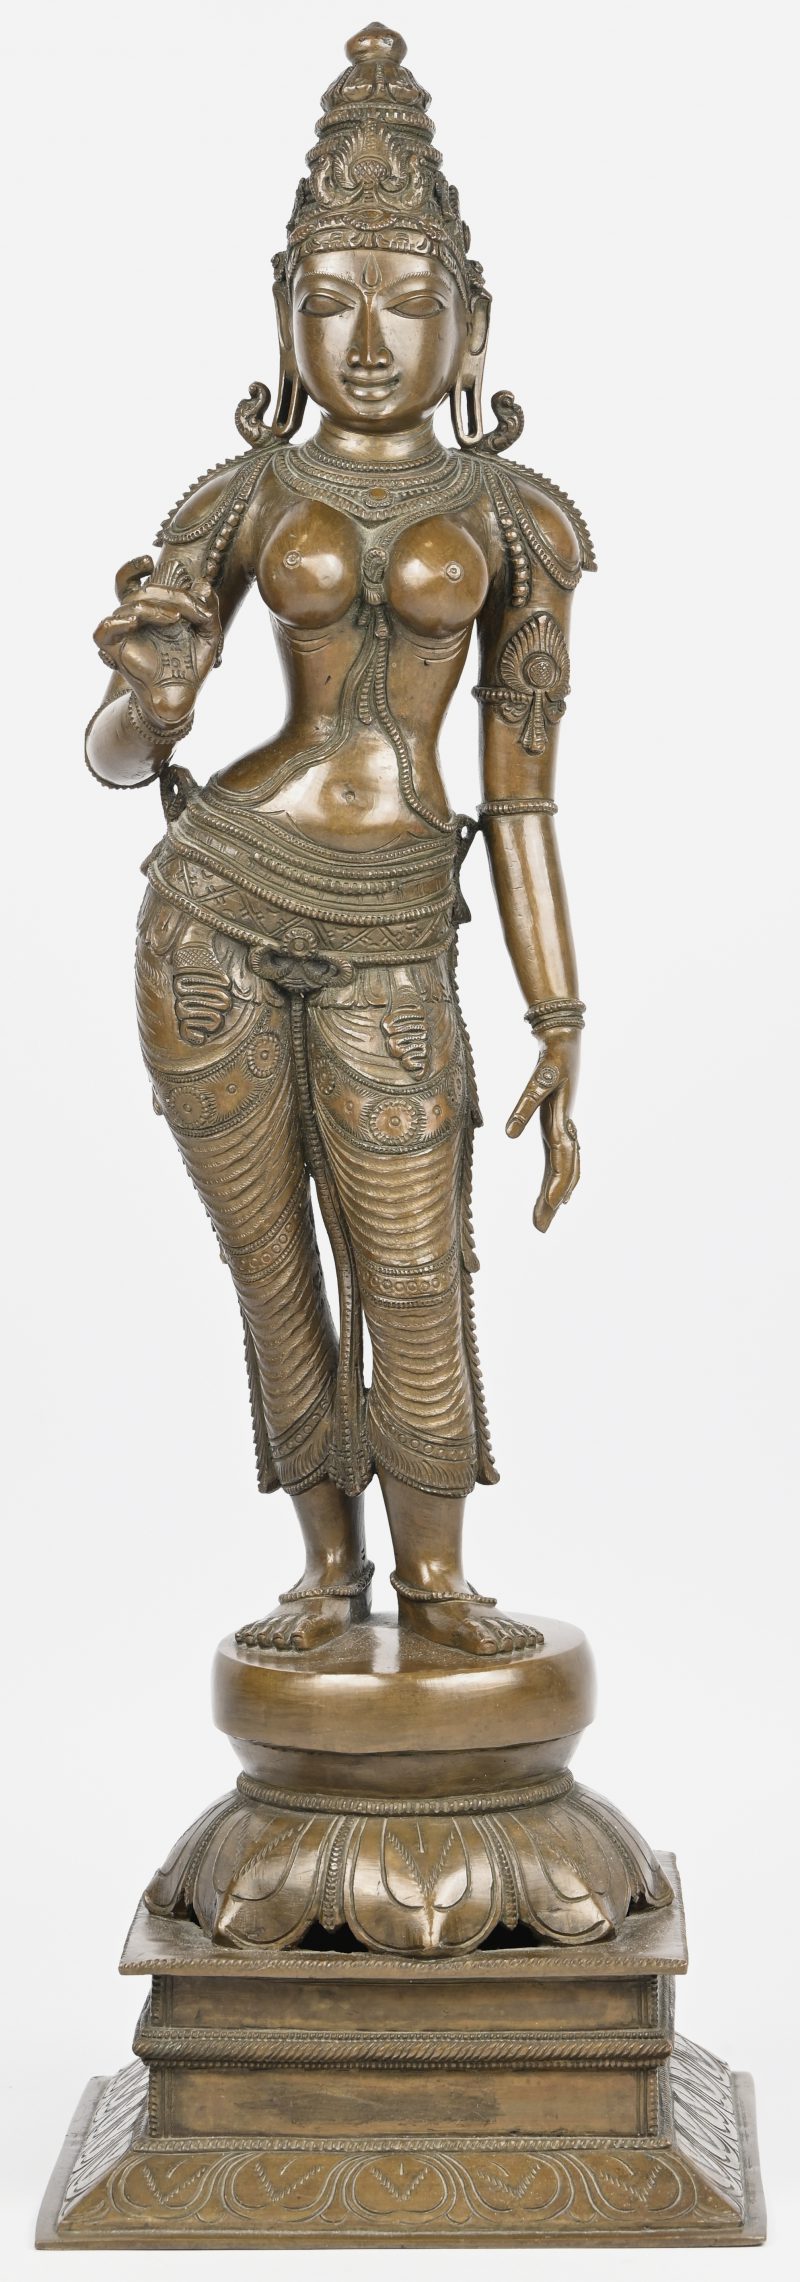 Een zwaar bronzen beeld van een Indische danseres op een sokkel met lotusbloem.